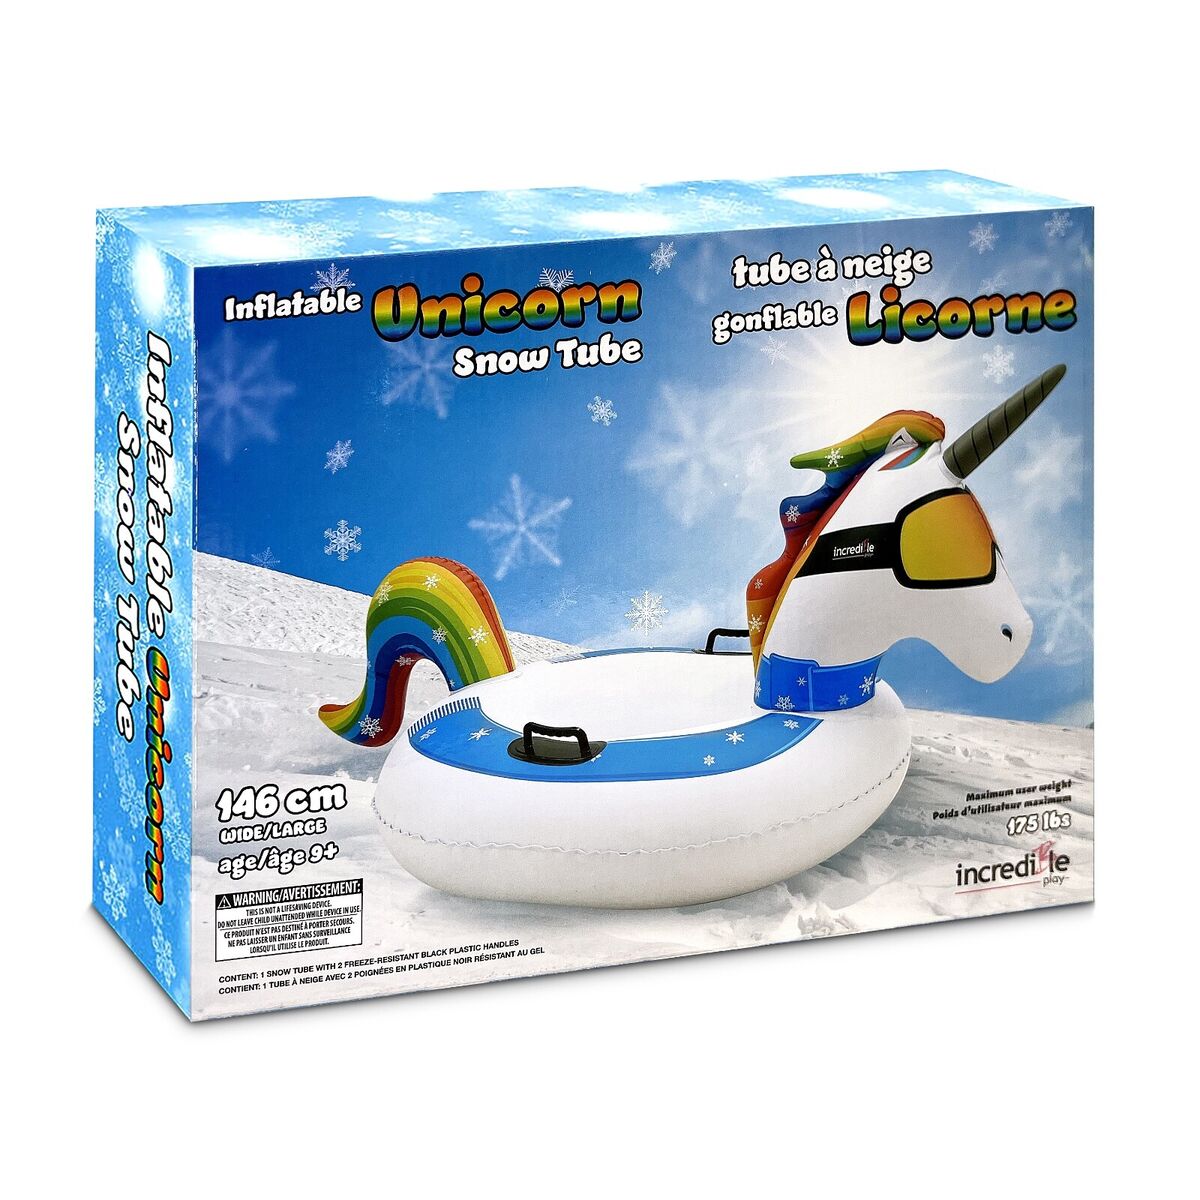 Inflatable unicorn snow tube